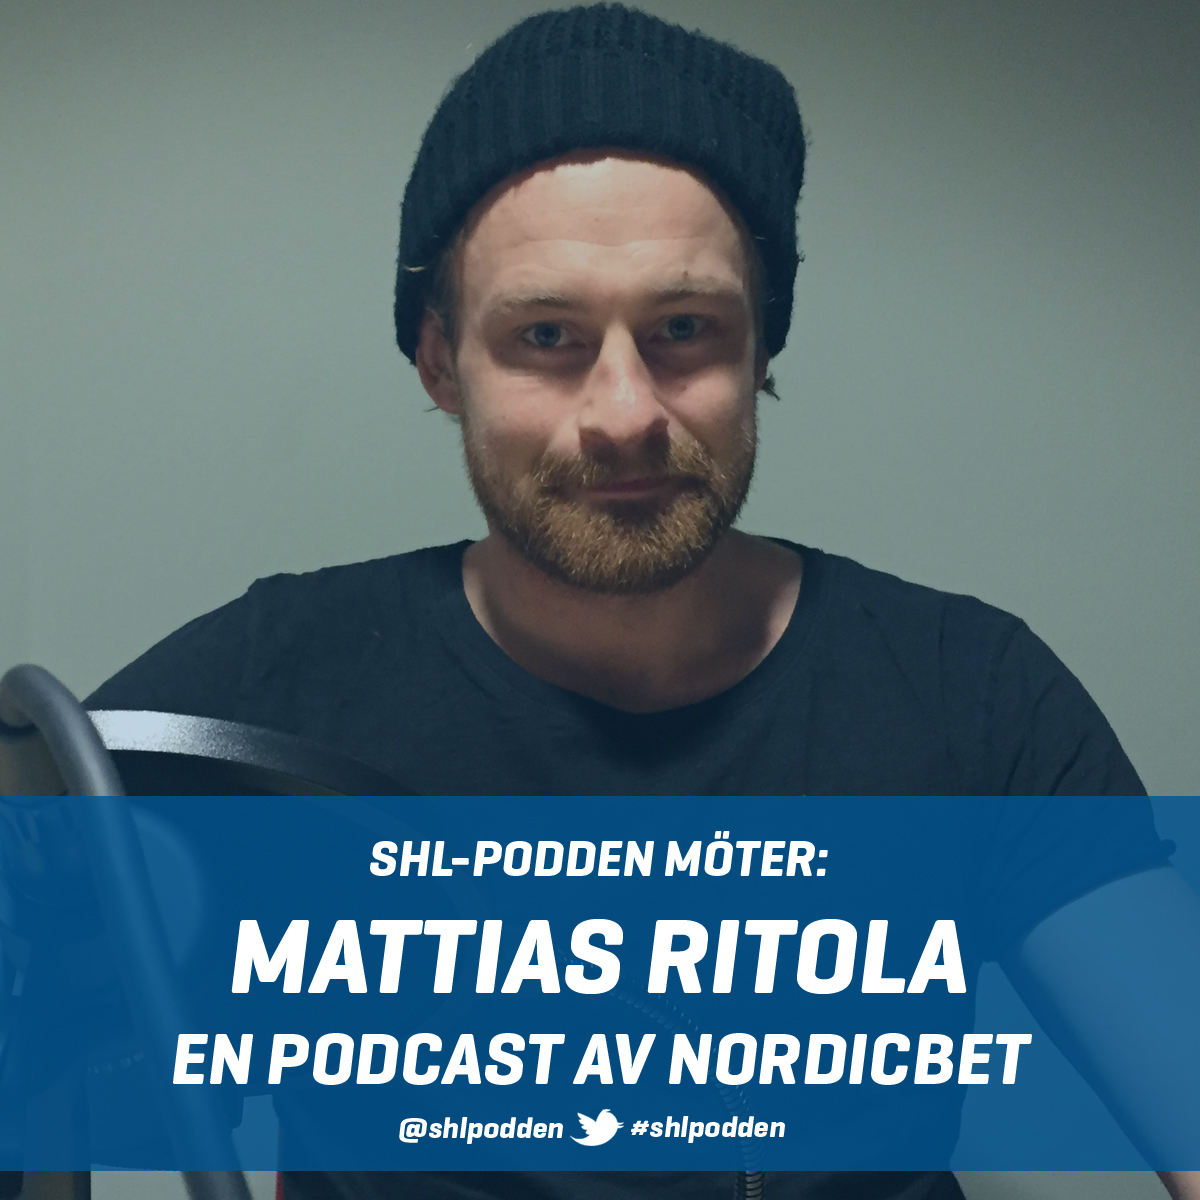 SHL-podden möter: Mattias Ritola